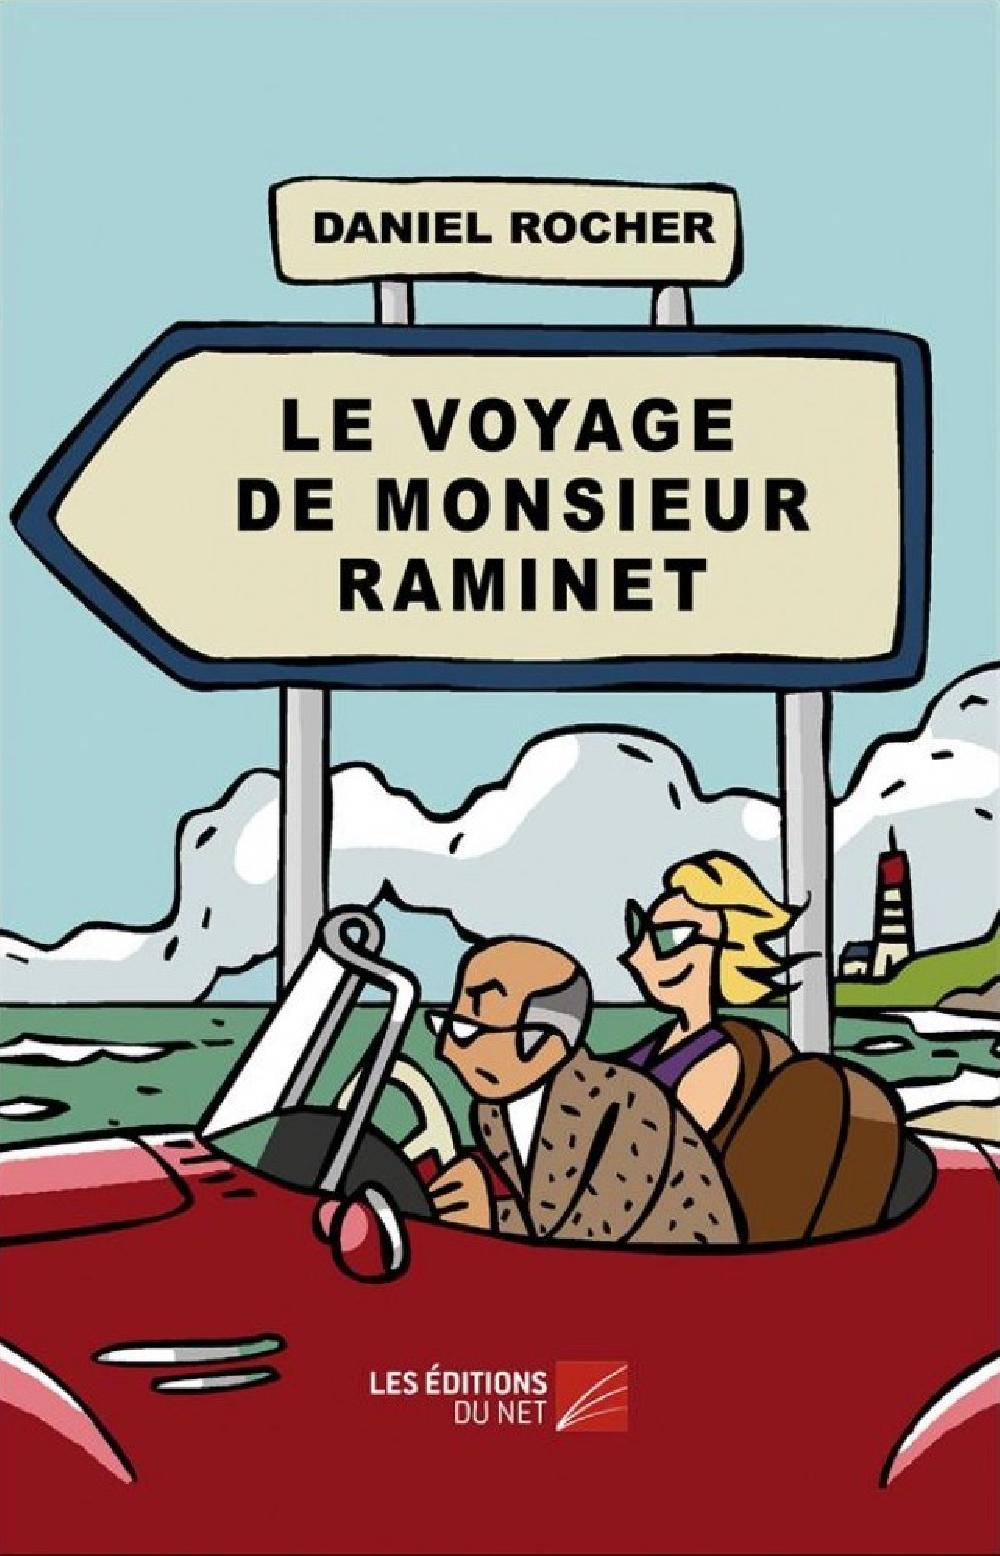 Le voyage de monsieur Raminet